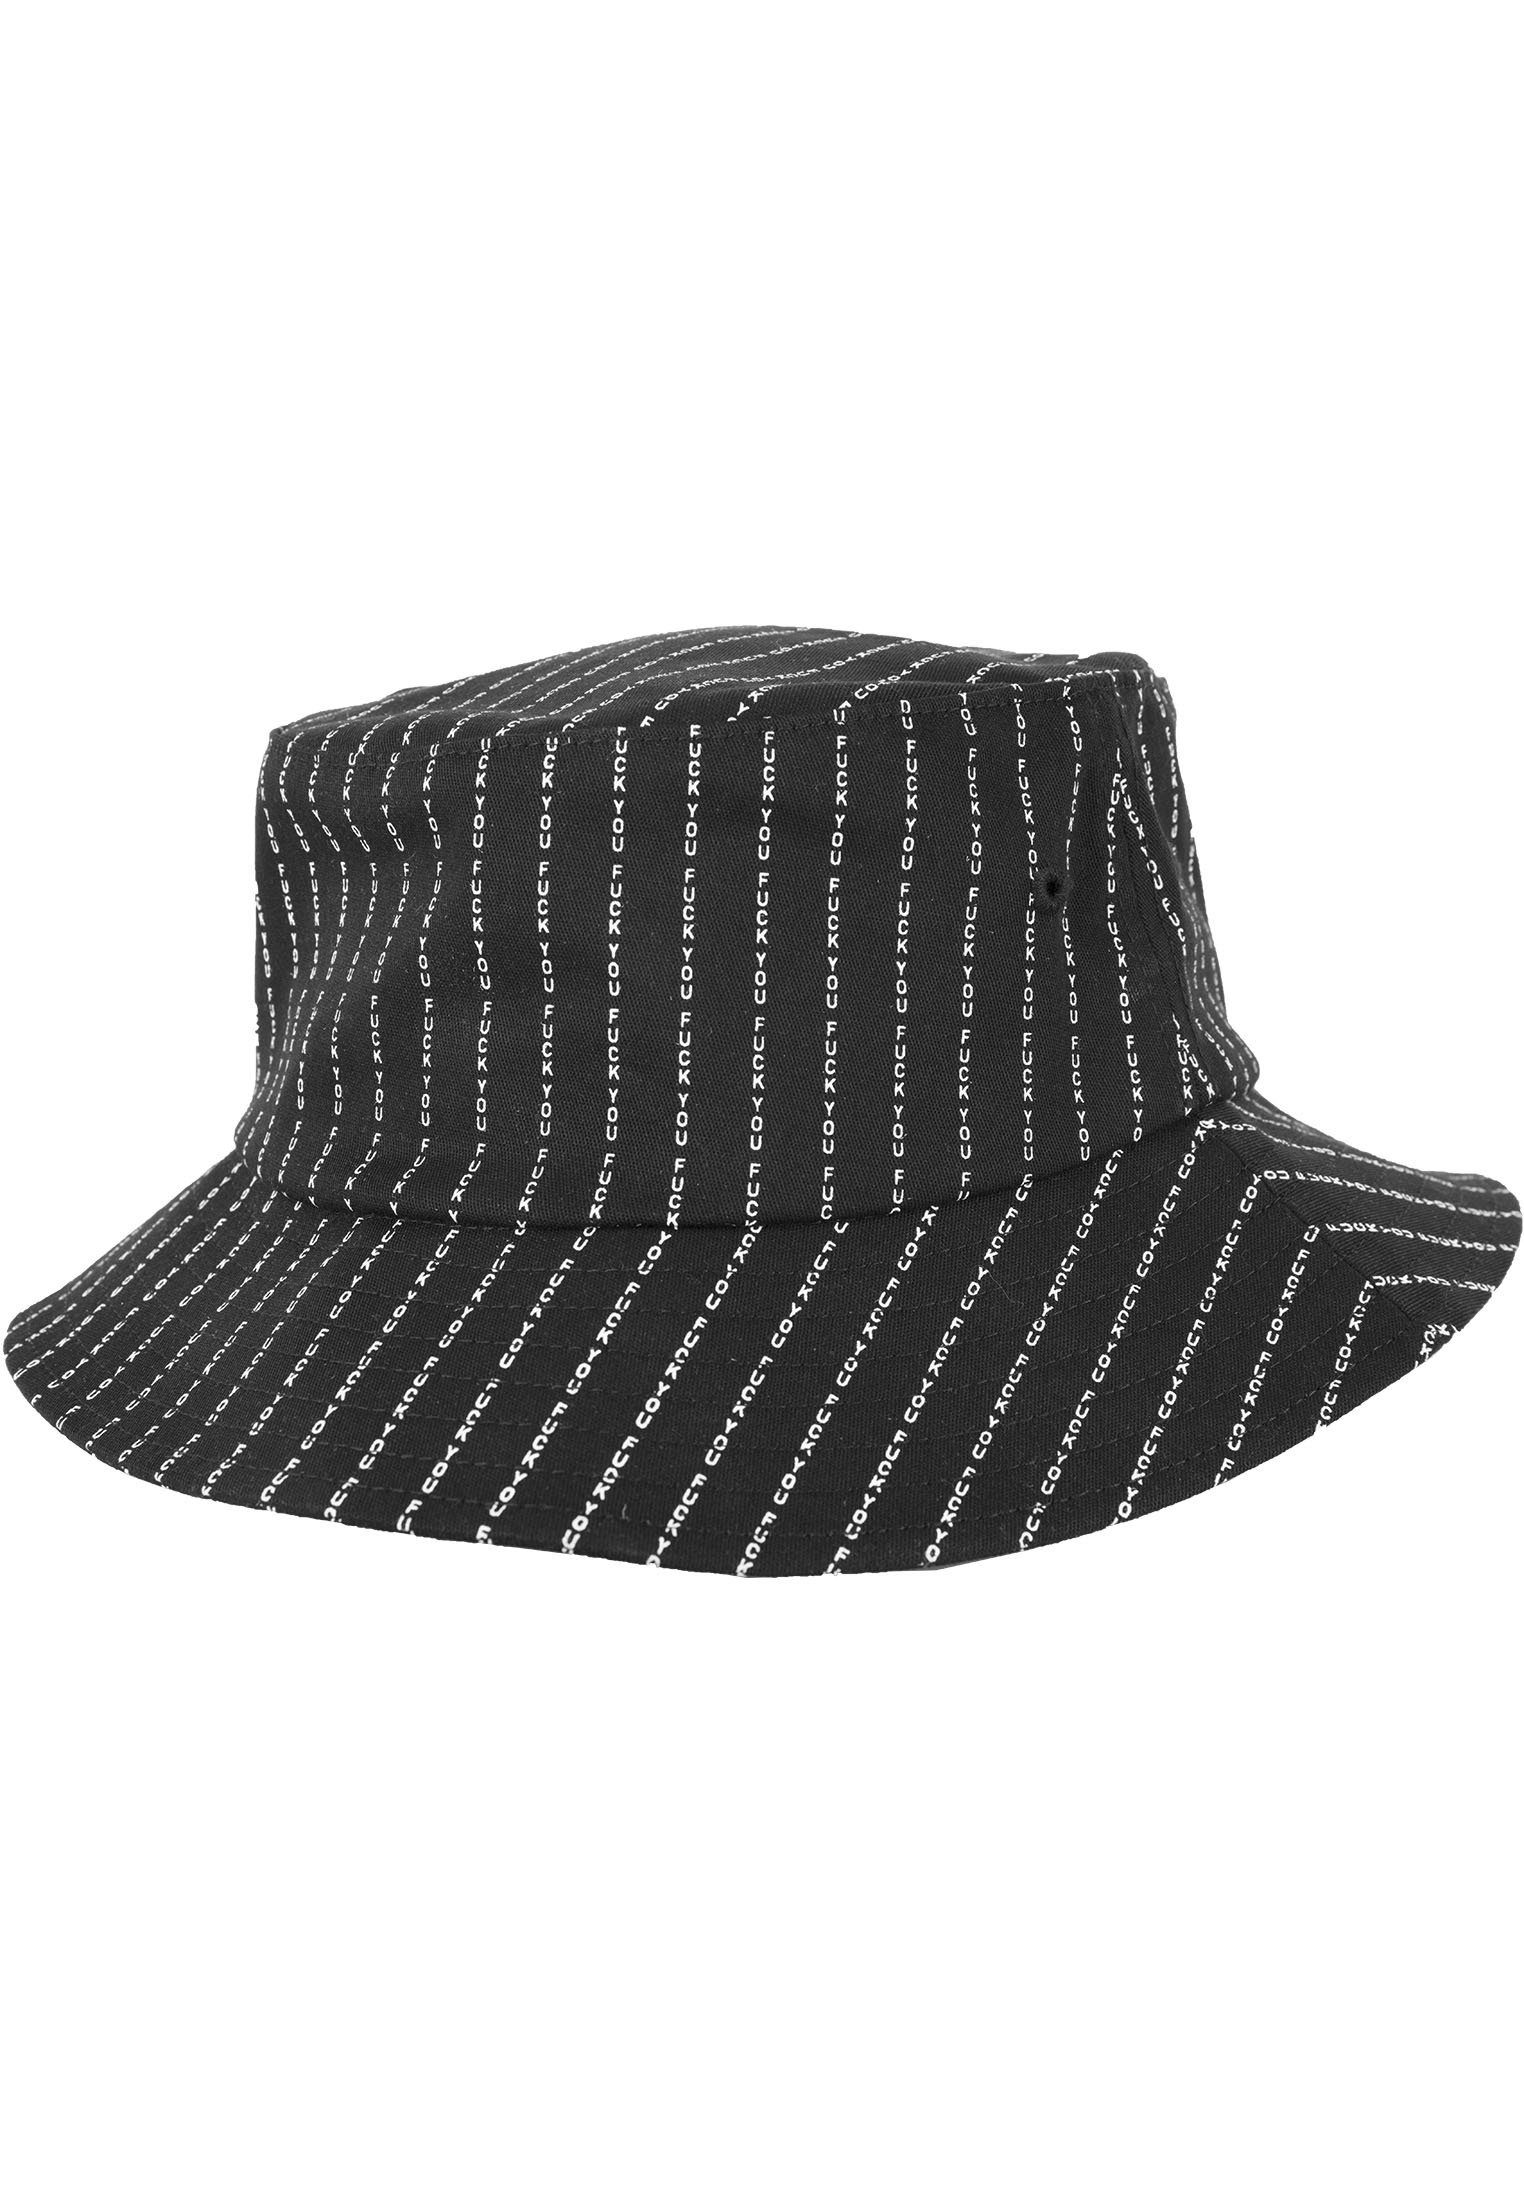 Mister Tee Y** MisterTee Flex F*** Herren Cap Bucket Hat